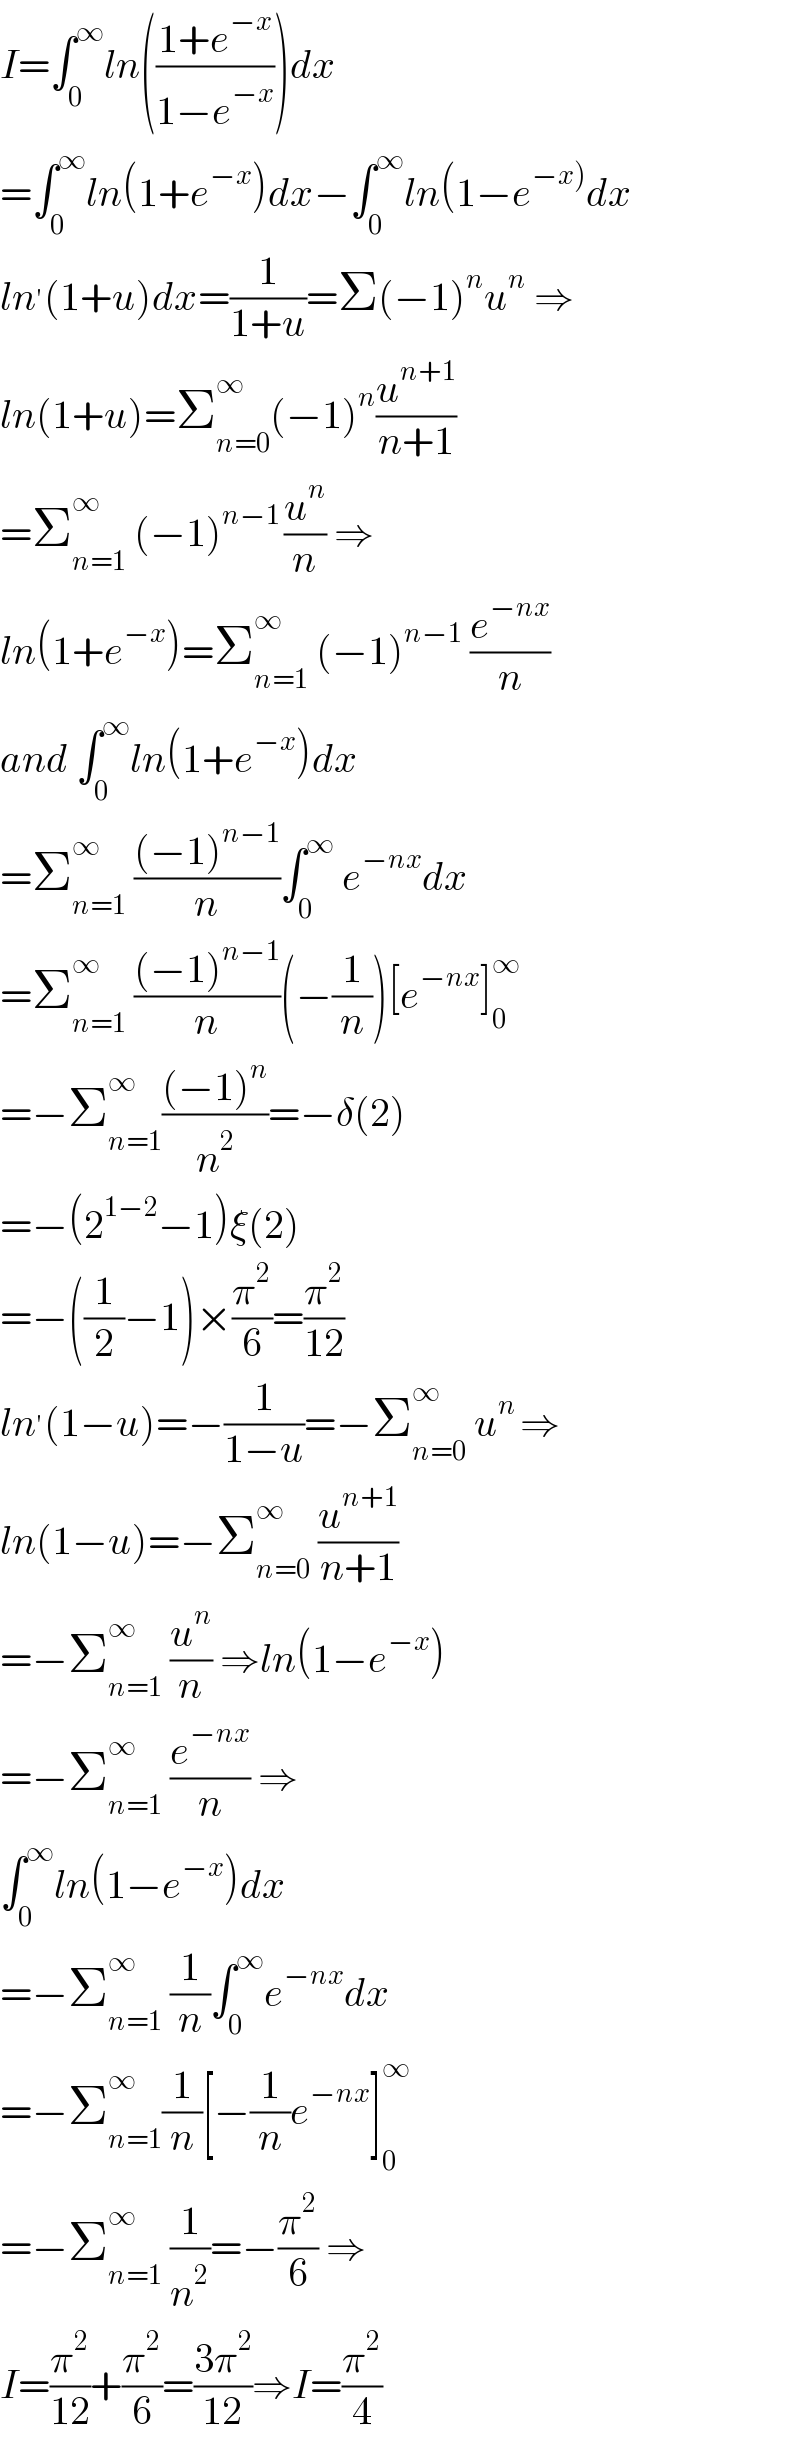 I=∫_0 ^∞ ln(((1+e^(−x) )/(1−e^(−x) )))dx  =∫_0 ^∞ ln(1+e^(−x) )dx−∫_0 ^∞ ln(1−e^(−x)) dx  ln^′ (1+u)dx=(1/(1+u))=Σ(−1)^n u^n  ⇒  ln(1+u)=Σ_(n=0) ^∞ (−1)^n (u^(n+1) /(n+1))  =Σ_(n=1) ^(∞ )  (−1)^(n−1 ) (u^n /n) ⇒  ln(1+e^(−x) )=Σ_(n=1) ^∞  (−1)^(n−1)  (e^(−nx) /n)  and ∫_0 ^∞ ln(1+e^(−x) )dx  =Σ_(n=1) ^∞  (((−1)^(n−1) )/n)∫_0 ^∞  e^(−nx) dx  =Σ_(n=1) ^∞  (((−1)^(n−1) )/n)(−(1/n))[e^(−nx) ]_0 ^∞   =−Σ_(n=1) ^∞ (((−1)^n )/n^2 )=−δ(2)  =−(2^(1−2) −1)ξ(2)  =−((1/2)−1)×(π^2 /6)=(π^2 /(12))  ln^′ (1−u)=−(1/(1−u))=−Σ_(n=0) ^∞  u^(n ) ⇒  ln(1−u)=−Σ_(n=0) ^∞  (u^(n+1) /(n+1))  =−Σ_(n=1) ^∞  (u^n /n) ⇒ln(1−e^(−x) )  =−Σ_(n=1) ^∞  (e^(−nx) /n) ⇒  ∫_0 ^∞ ln(1−e^(−x) )dx  =−Σ_(n=1) ^∞  (1/n)∫_0 ^∞ e^(−nx) dx  =−Σ_(n=1) ^∞ (1/n)[−(1/n)e^(−nx) ]_0 ^∞   =−Σ_(n=1) ^∞  (1/n^2 )=−(π^2 /6) ⇒  I=(π^2 /(12))+(π^2 /6)=((3π^2 )/(12))⇒I=(π^2 /4)  